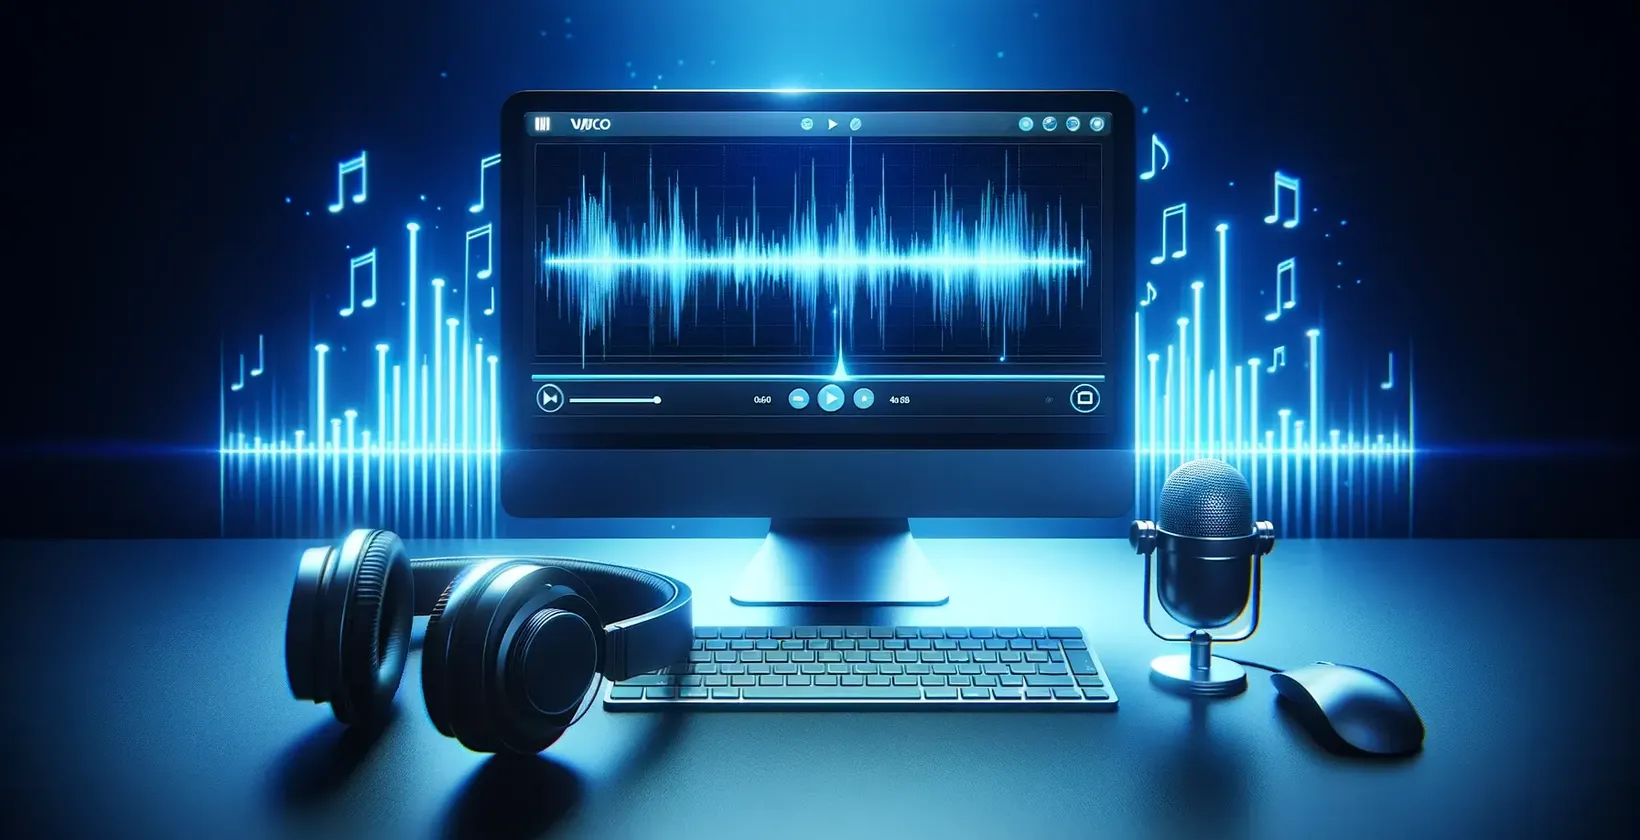 Perangkat lunak transkripsi otomatis ditampilkan dalam ruang kerja digital dengan komputer, headphone, dan mikrofon di atas meja.